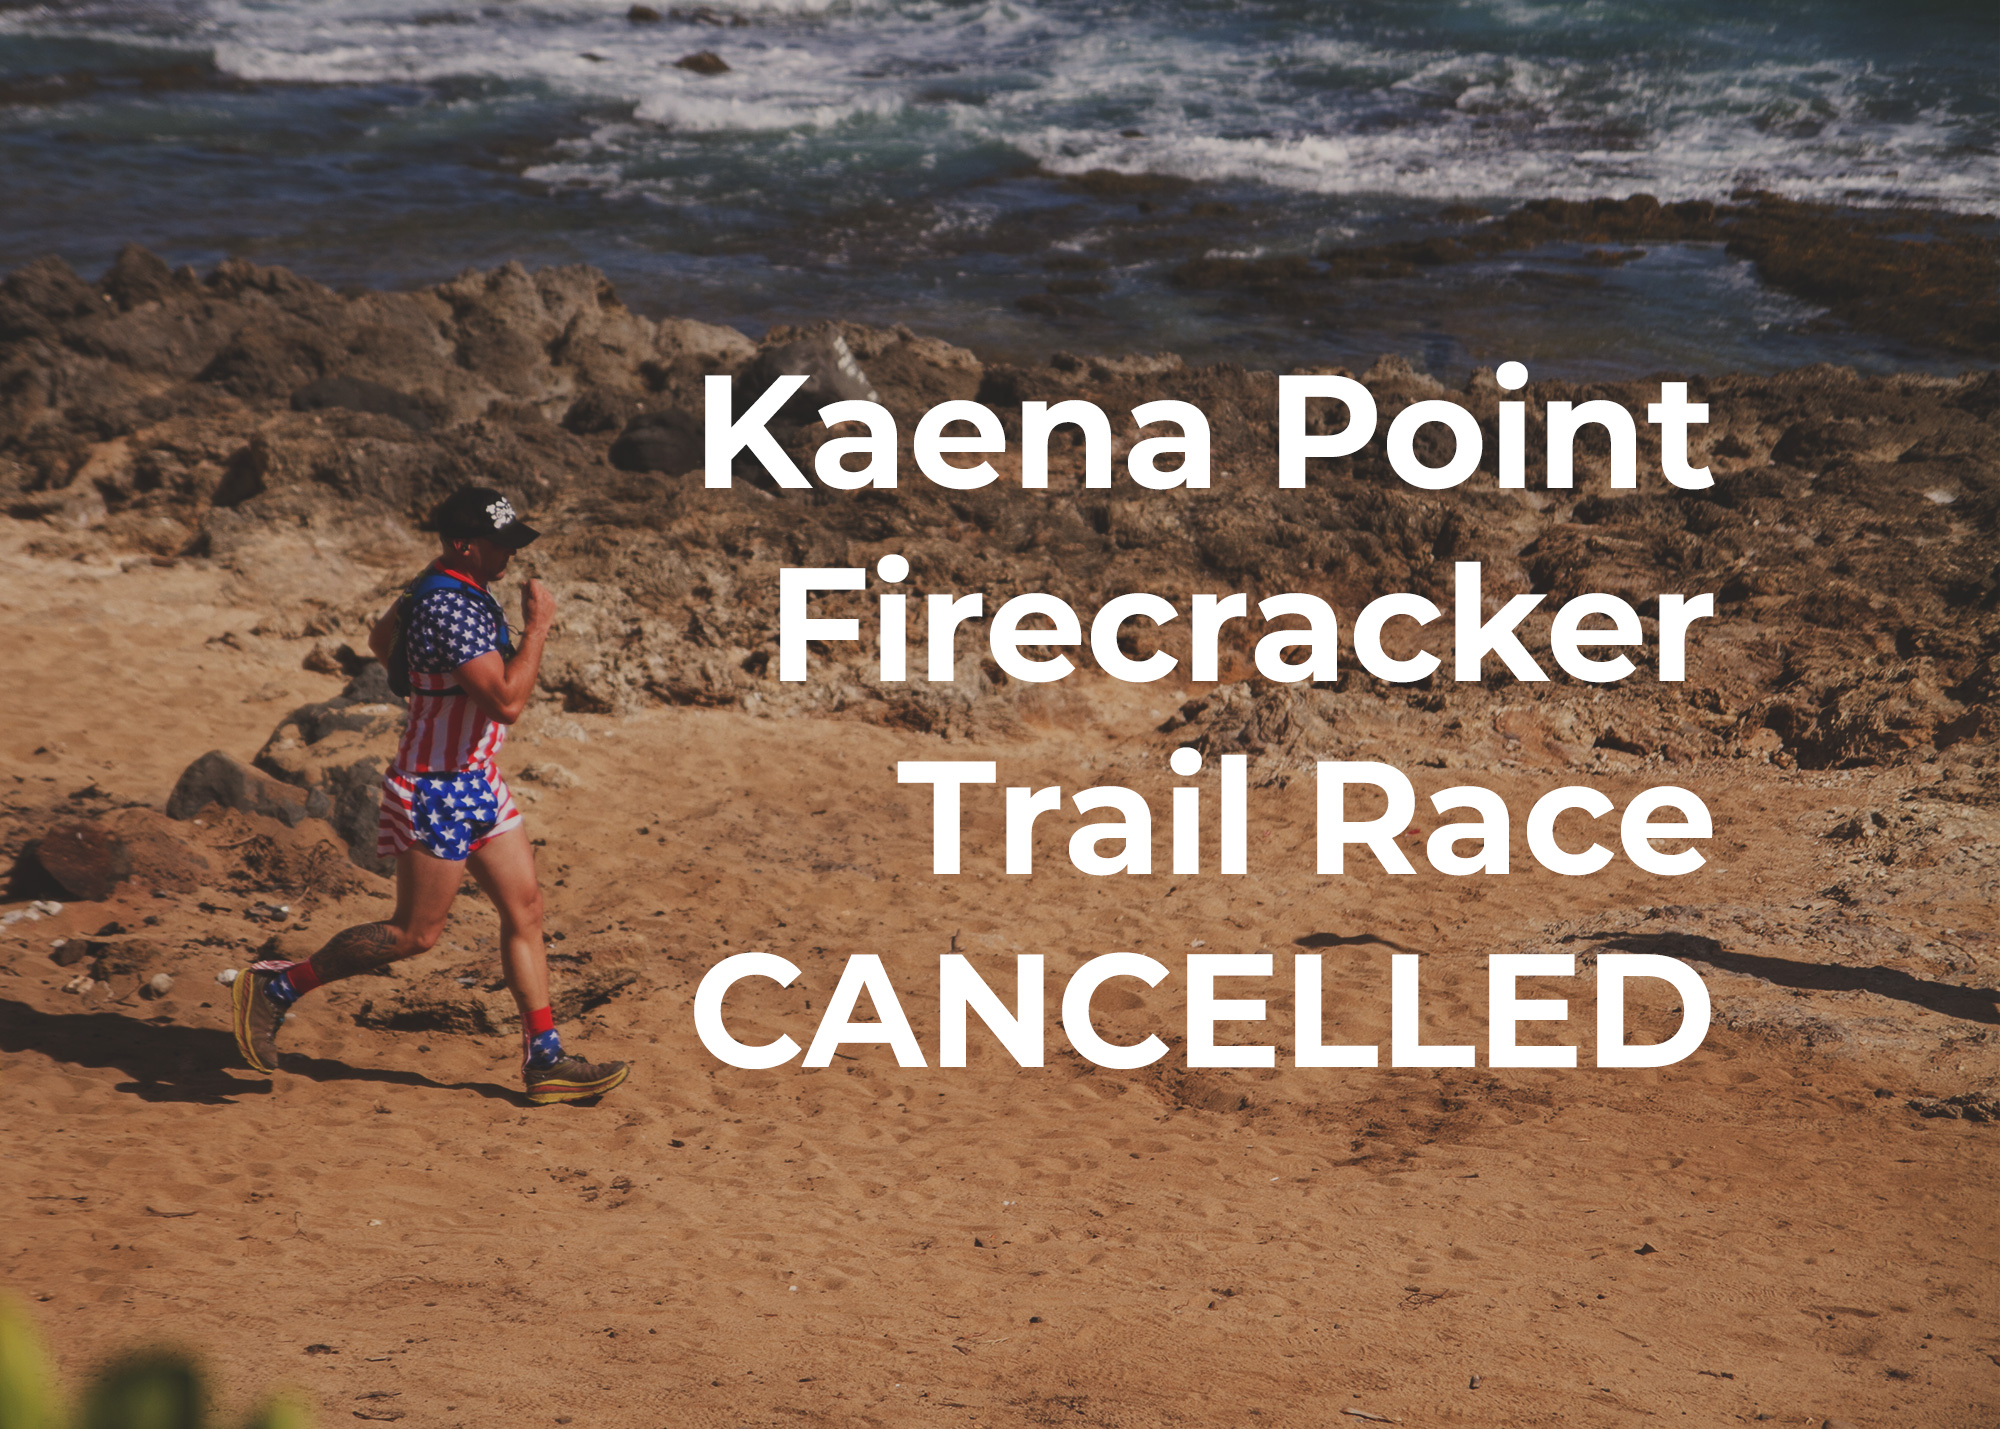 Kaena Point Firecracker Cancelled